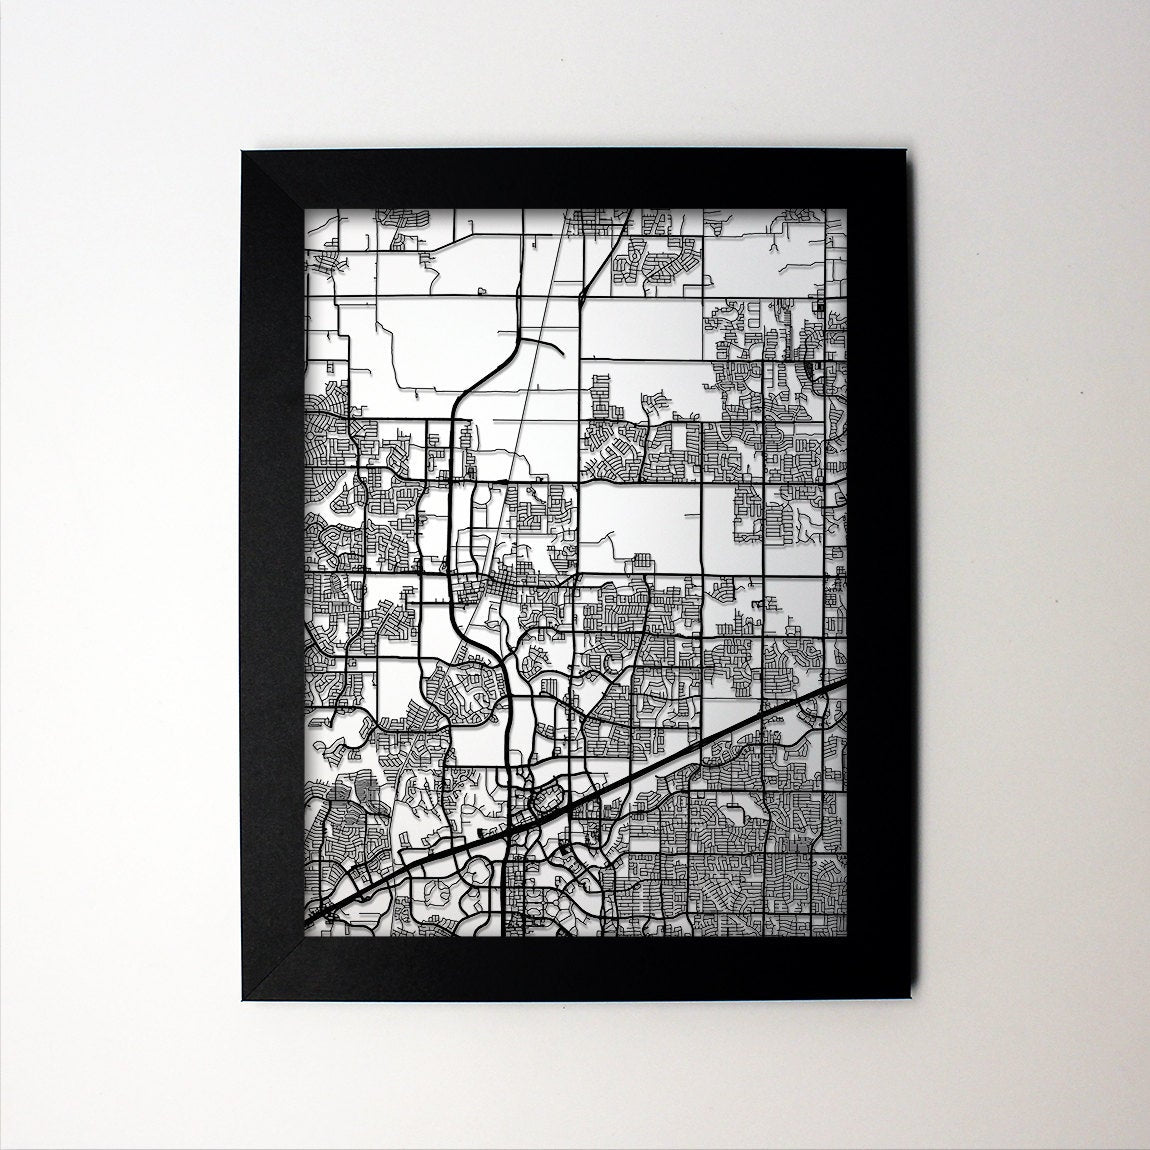 Frisco Texas framed laser cut map - CarbonLight